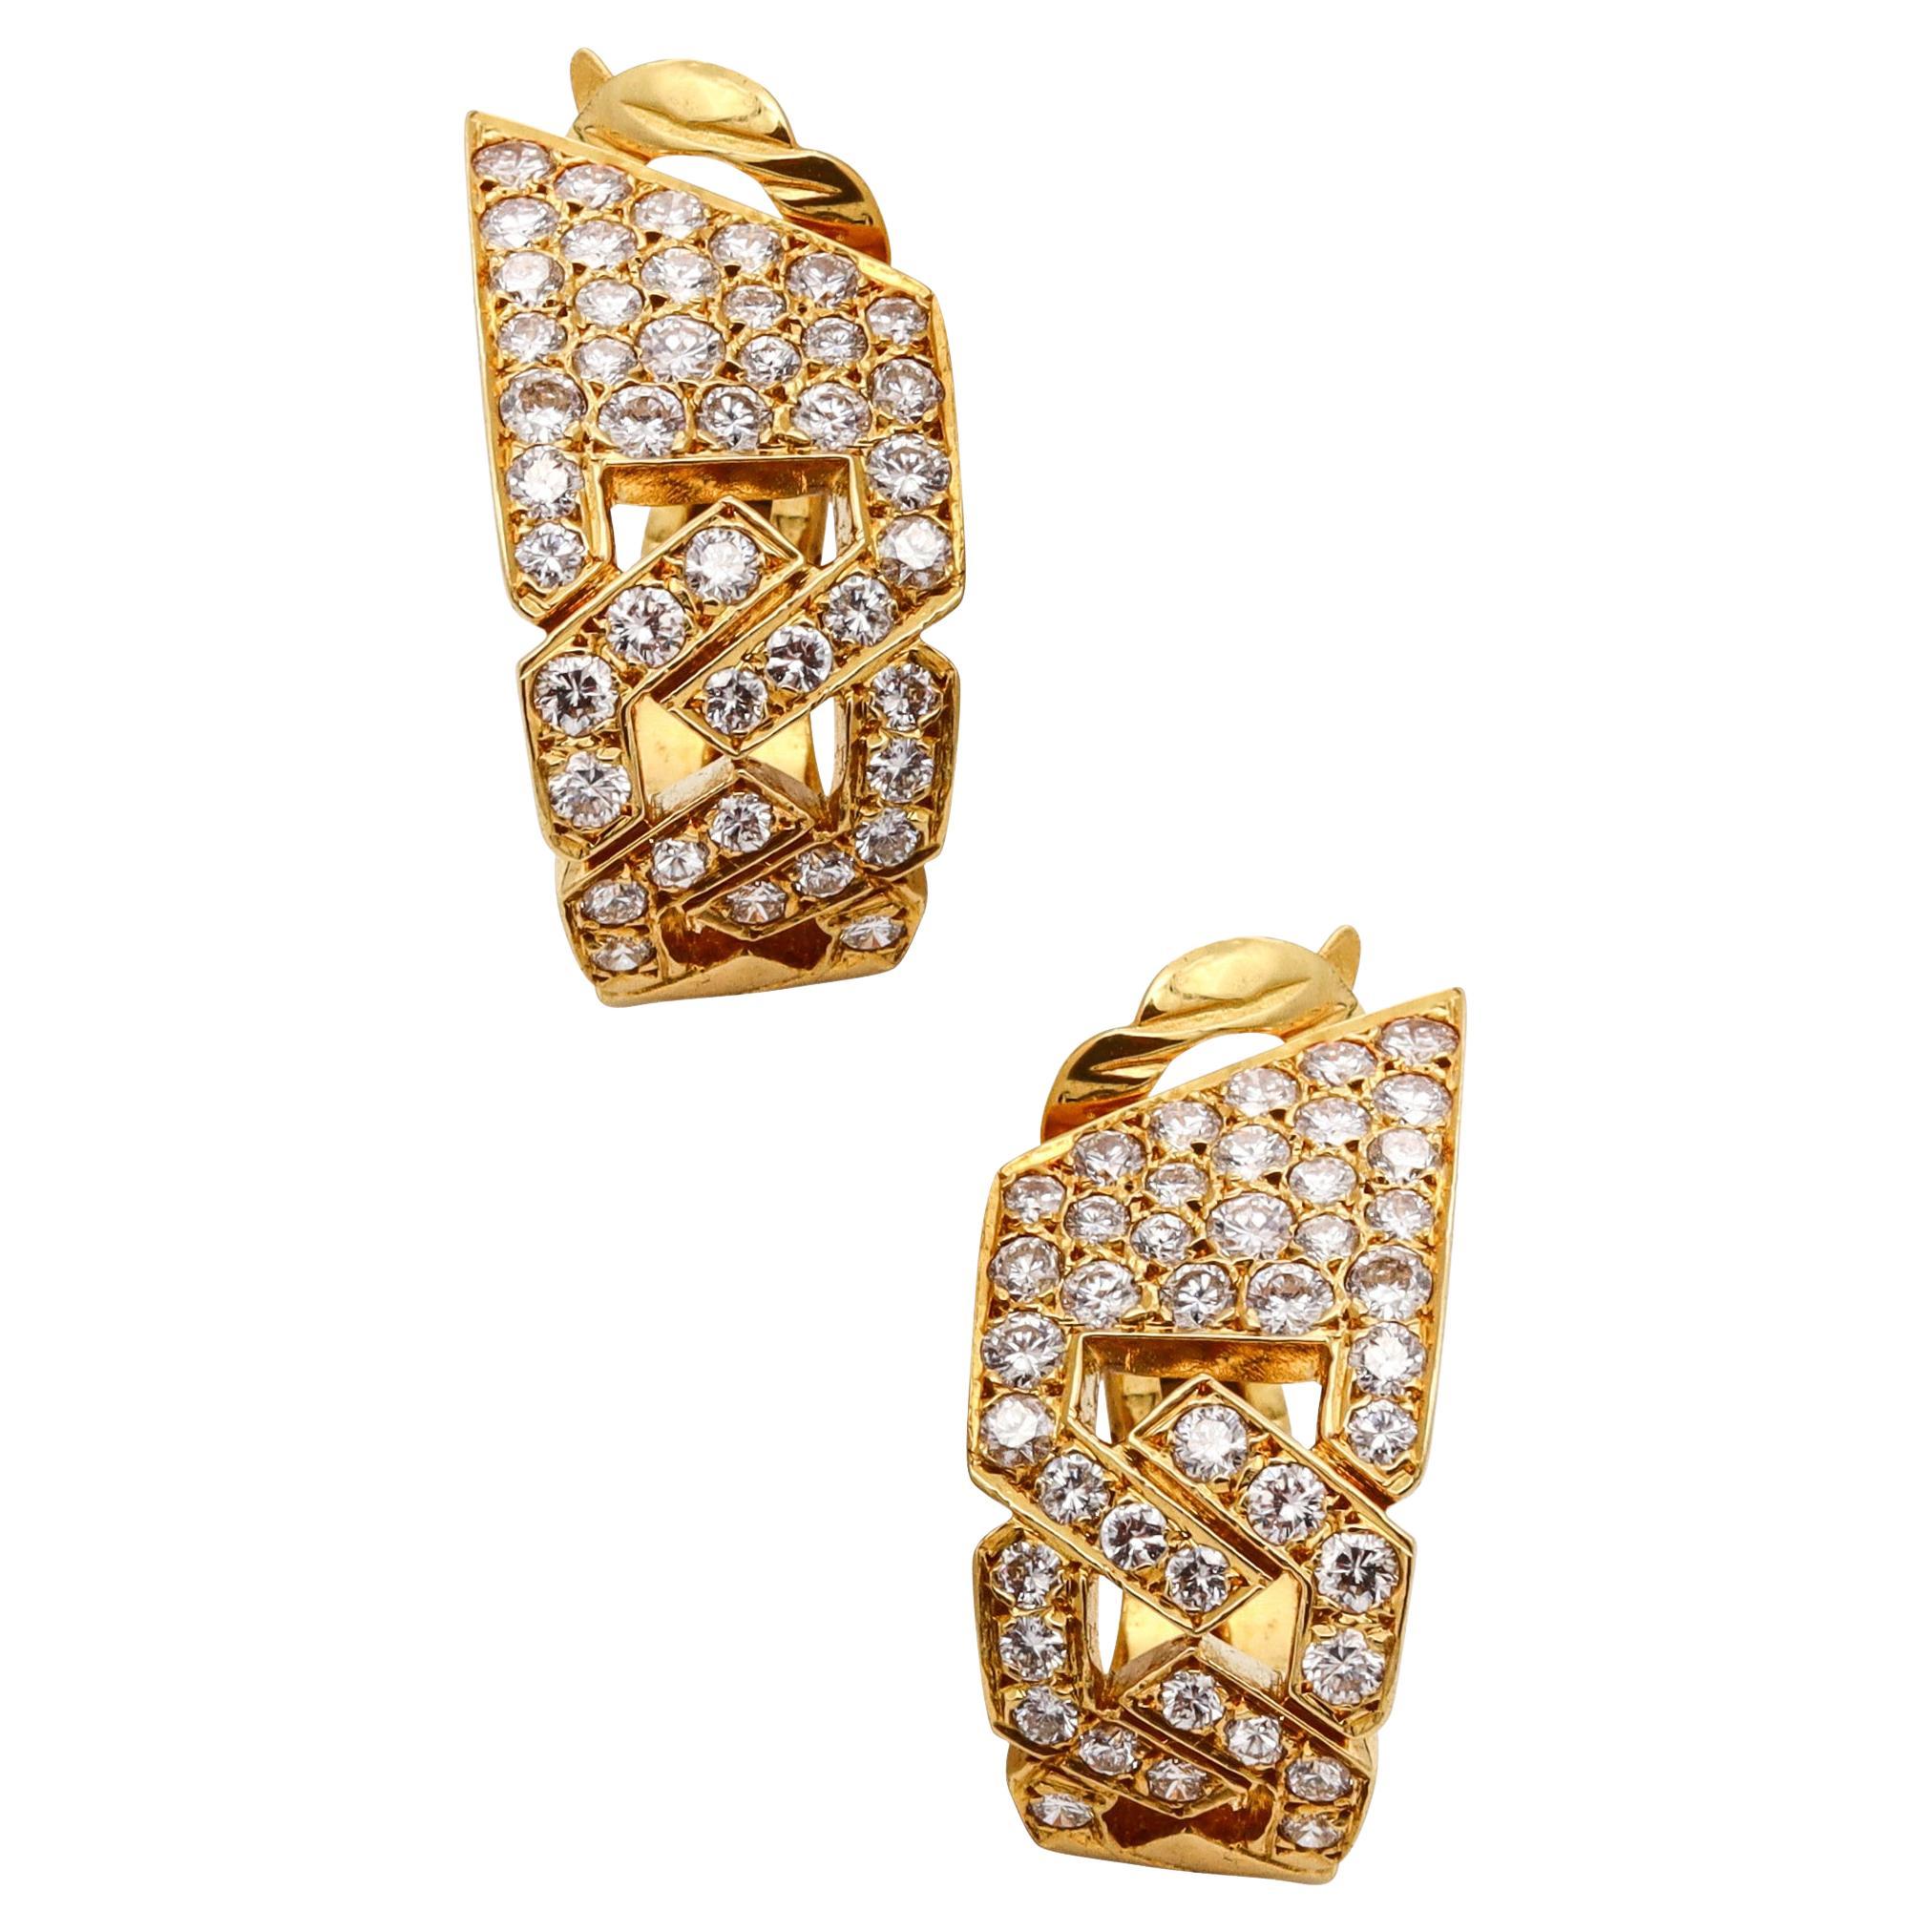 Van Cleef & Arpels 1970 Paris Hoop Clip Earrings in 18Kt Gold 4.20Cts Diamonds